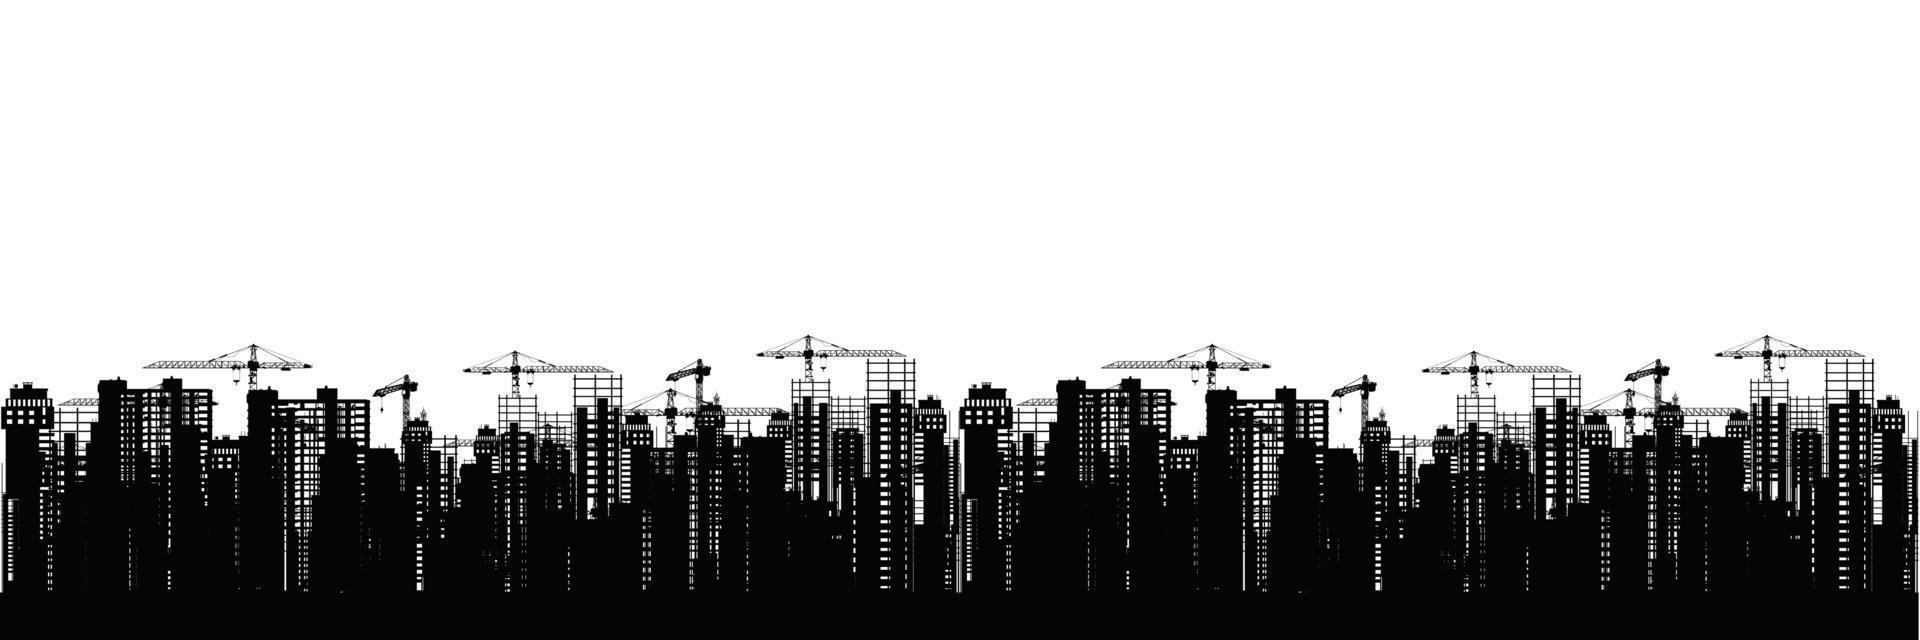 paisaje de construcción de la ciudad. siluetas de rascacielos negros en construcción con grúas contra el panorama vectorial de fondo blanco. vector